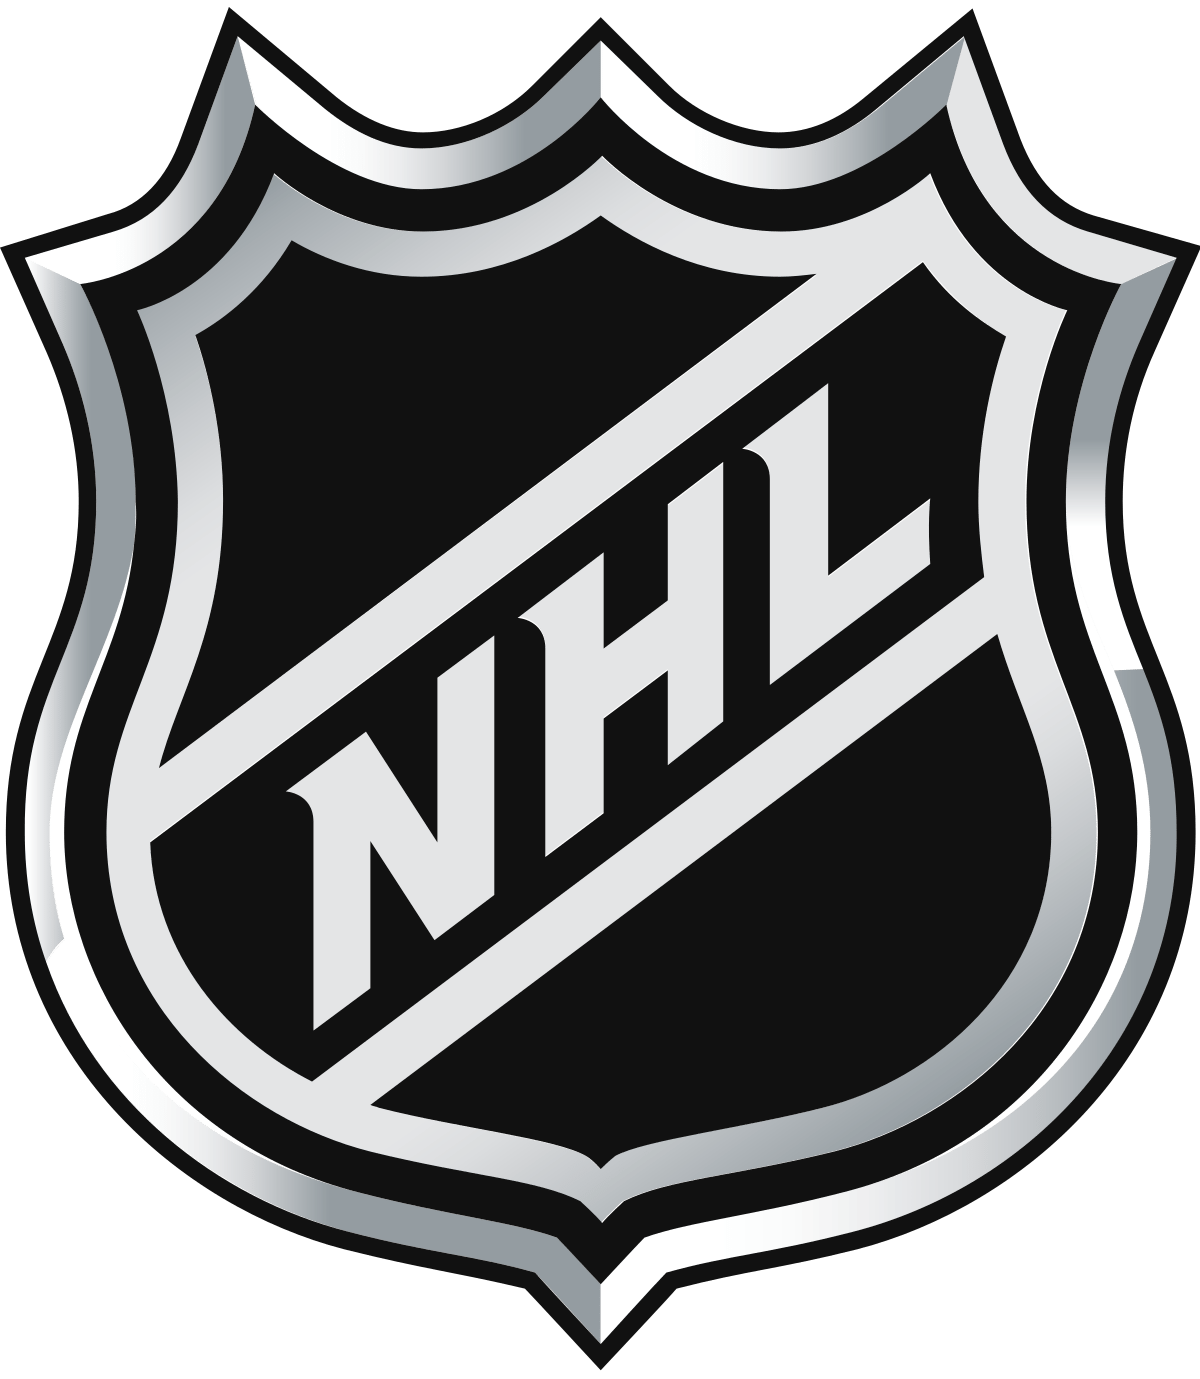 05_NHL_Shield.svg